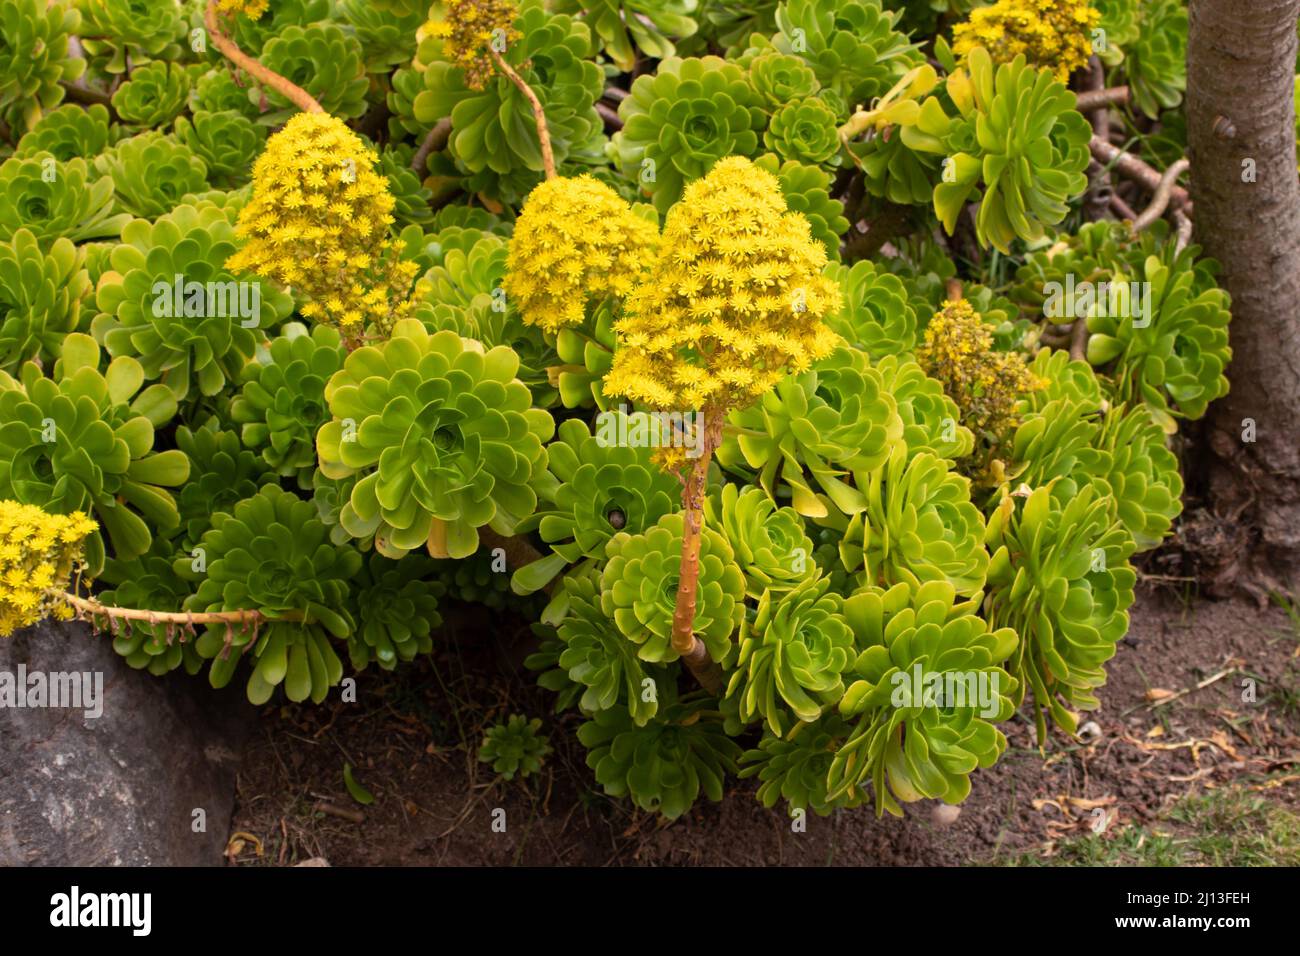 Aeonium arboreum oder Baum-Aeonium-blühende Pflanzen mit gelben konischen Blütenständen Stockfoto